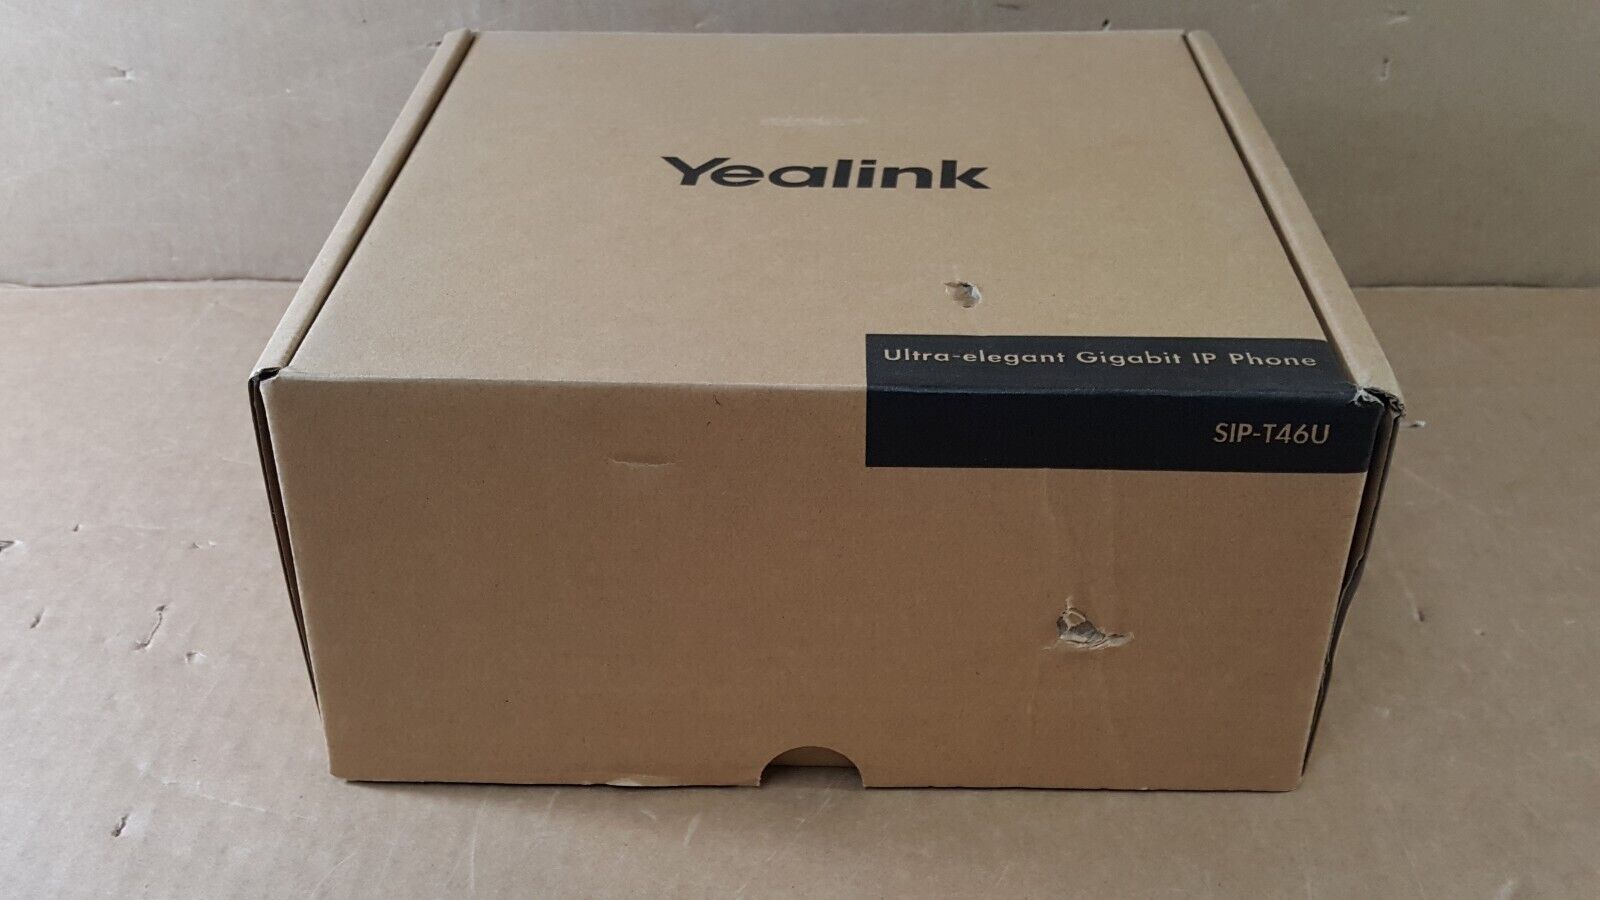 Yealink SIP-T46U Black Unified Firmware Enhanced SIP Phone - VoIP phone